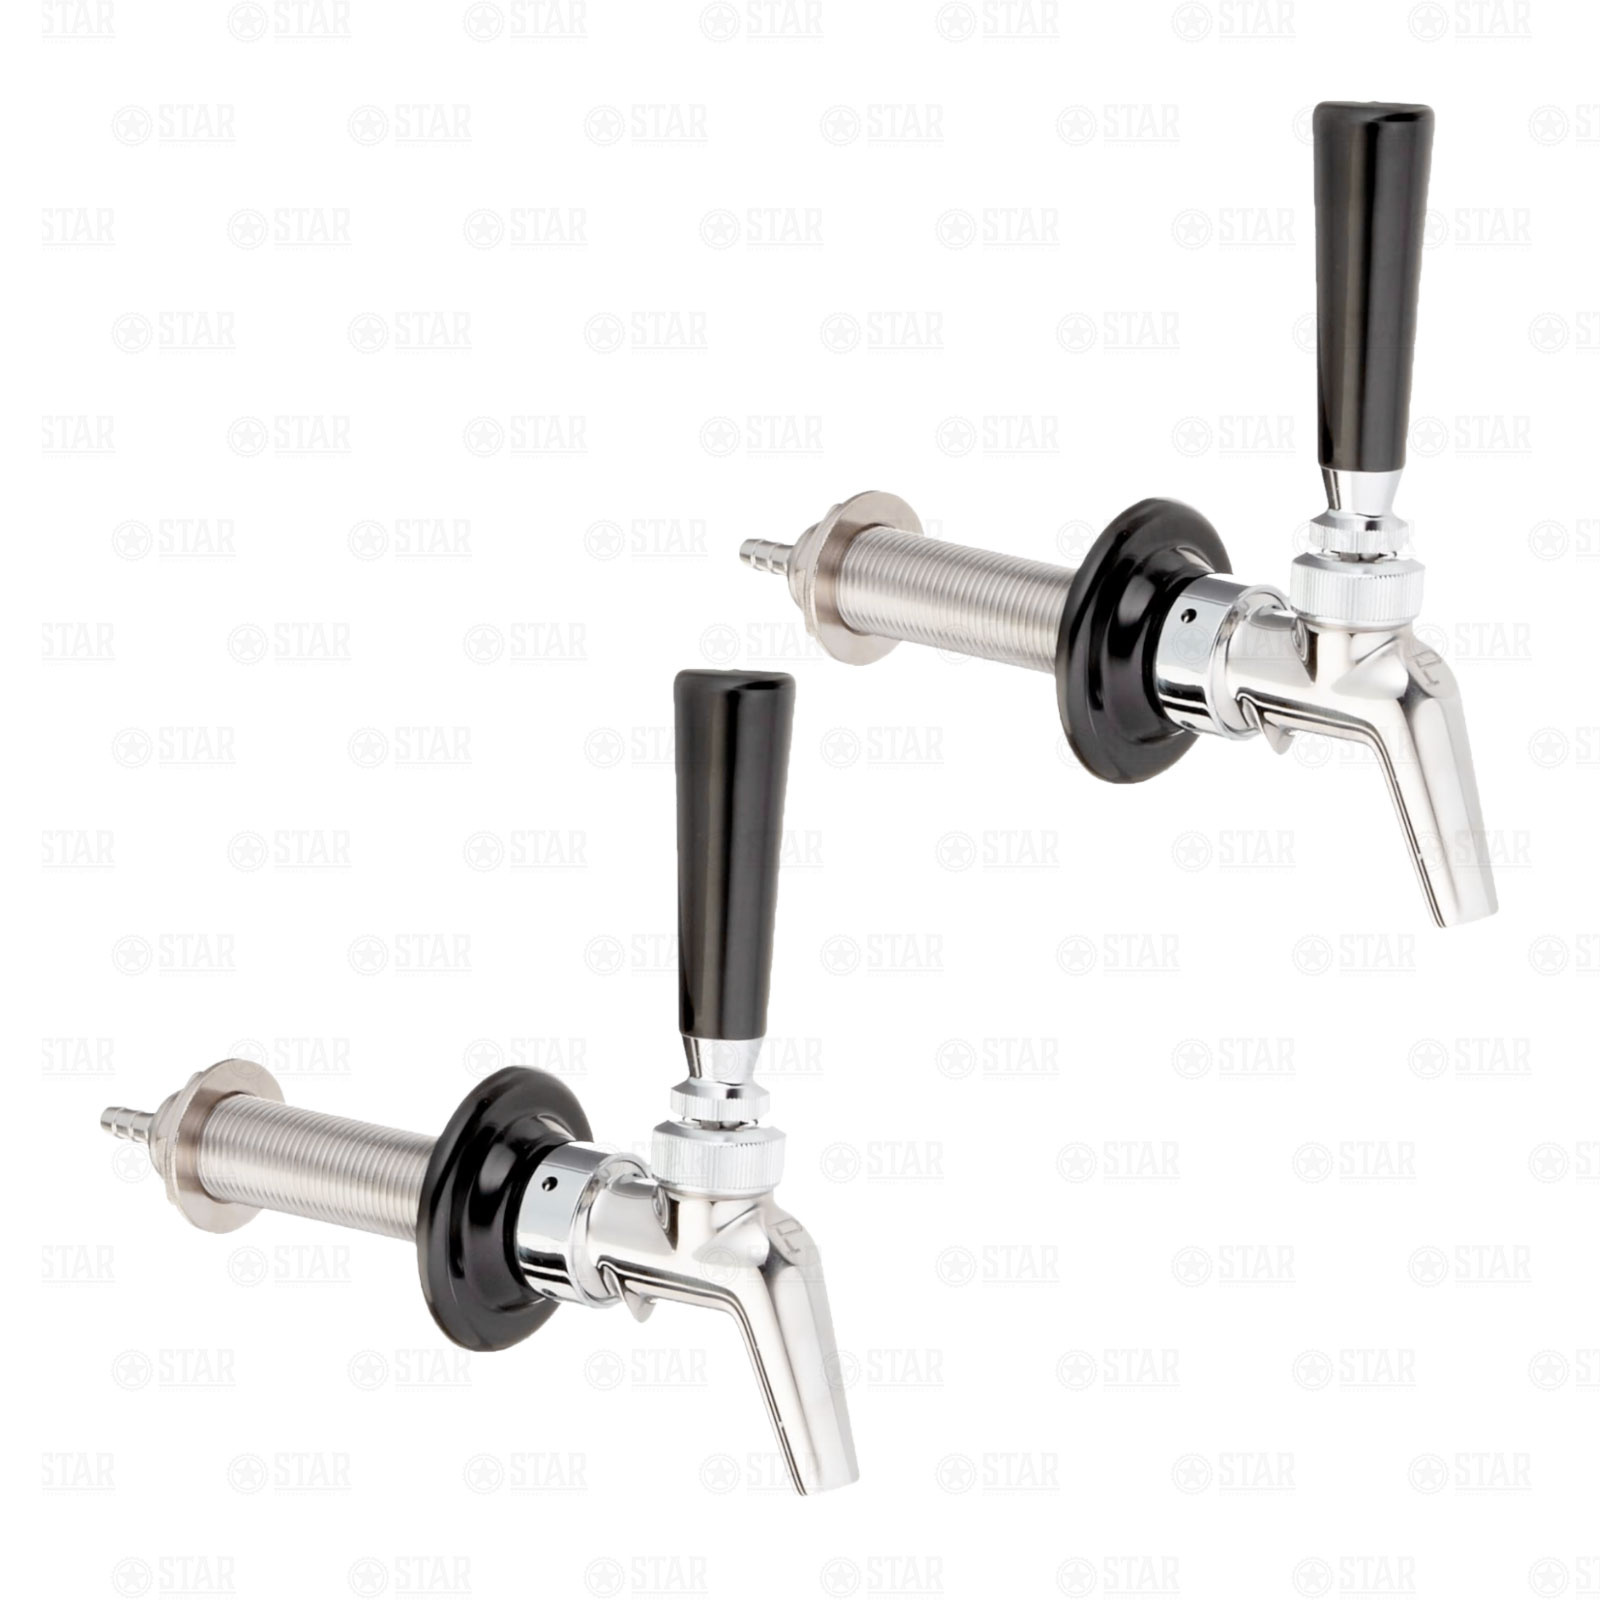 NUKATAP Stainless Steel Beer Faucet Keg Tap Kegerator Spout w/ Interchangeab 